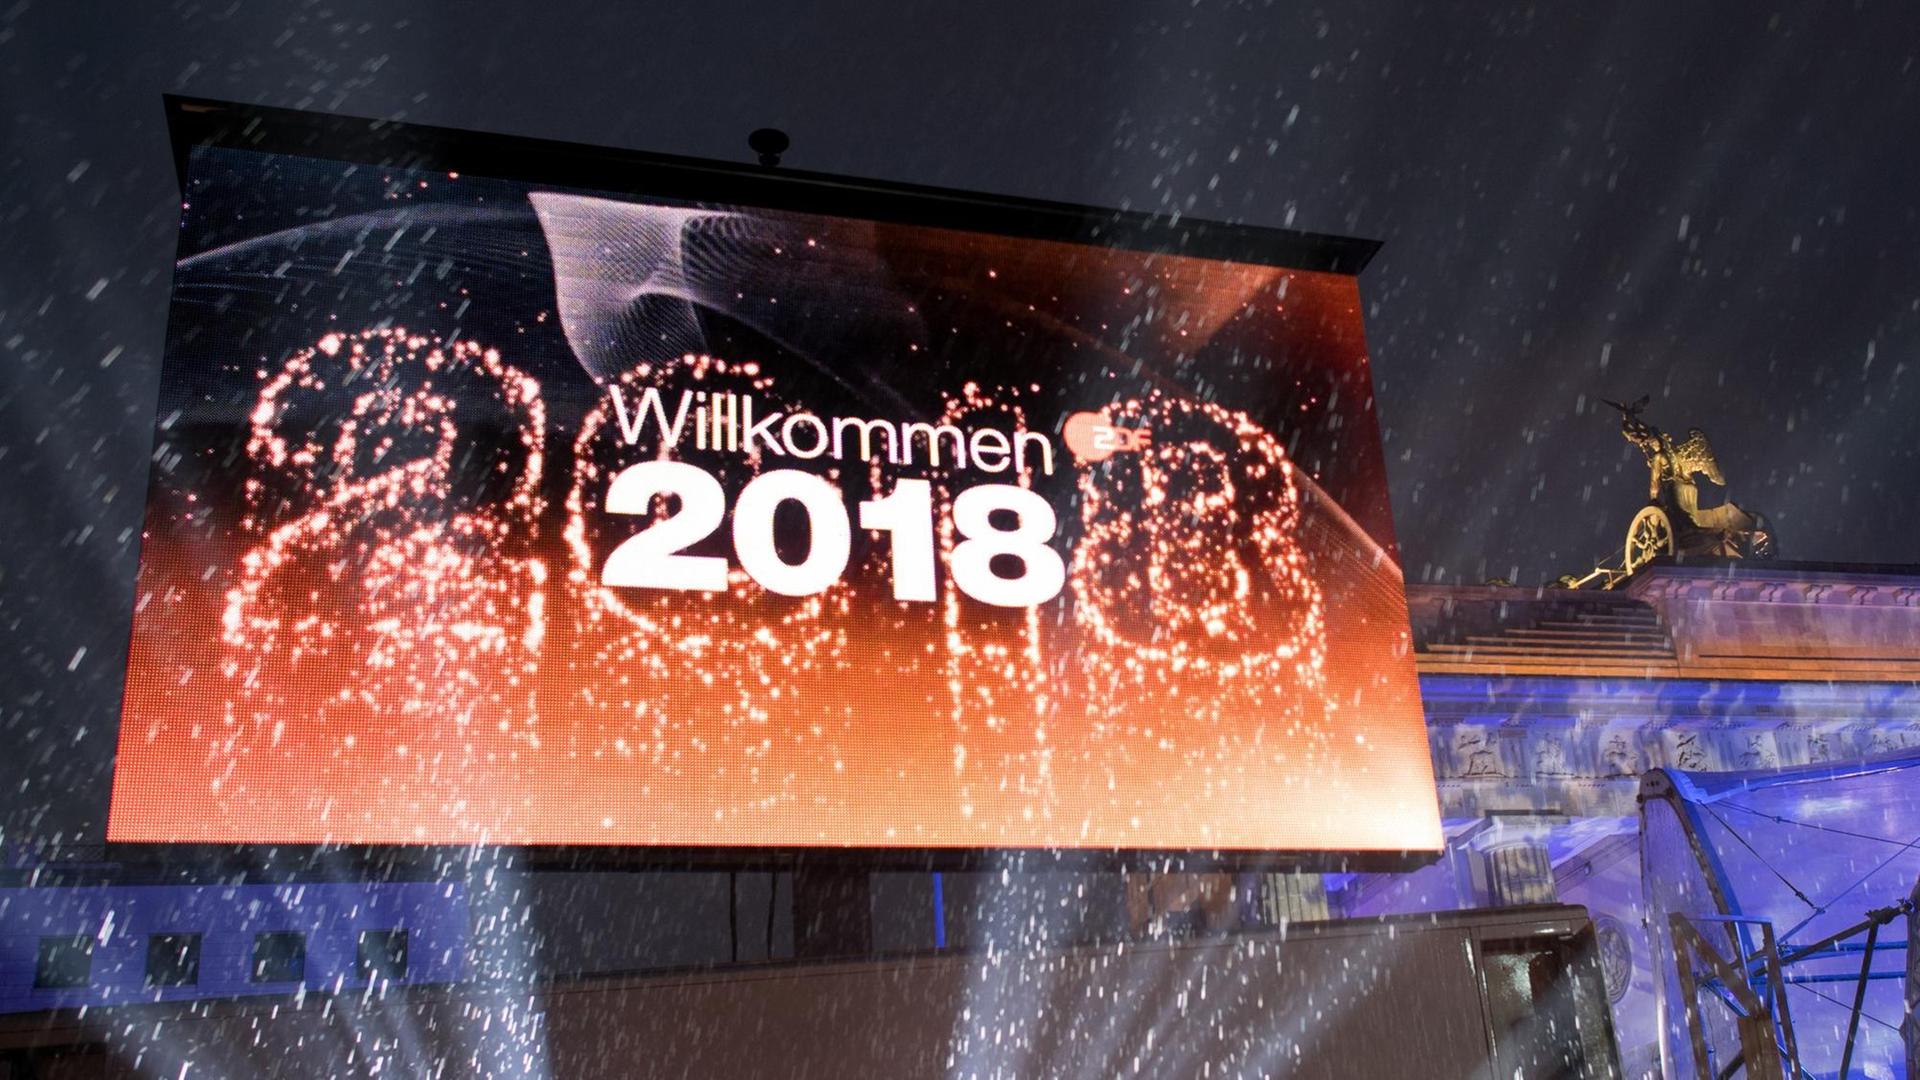 Lichtshow vor dem Brandenburger Tor mit dem Schriftzug "Willkommen 2018".